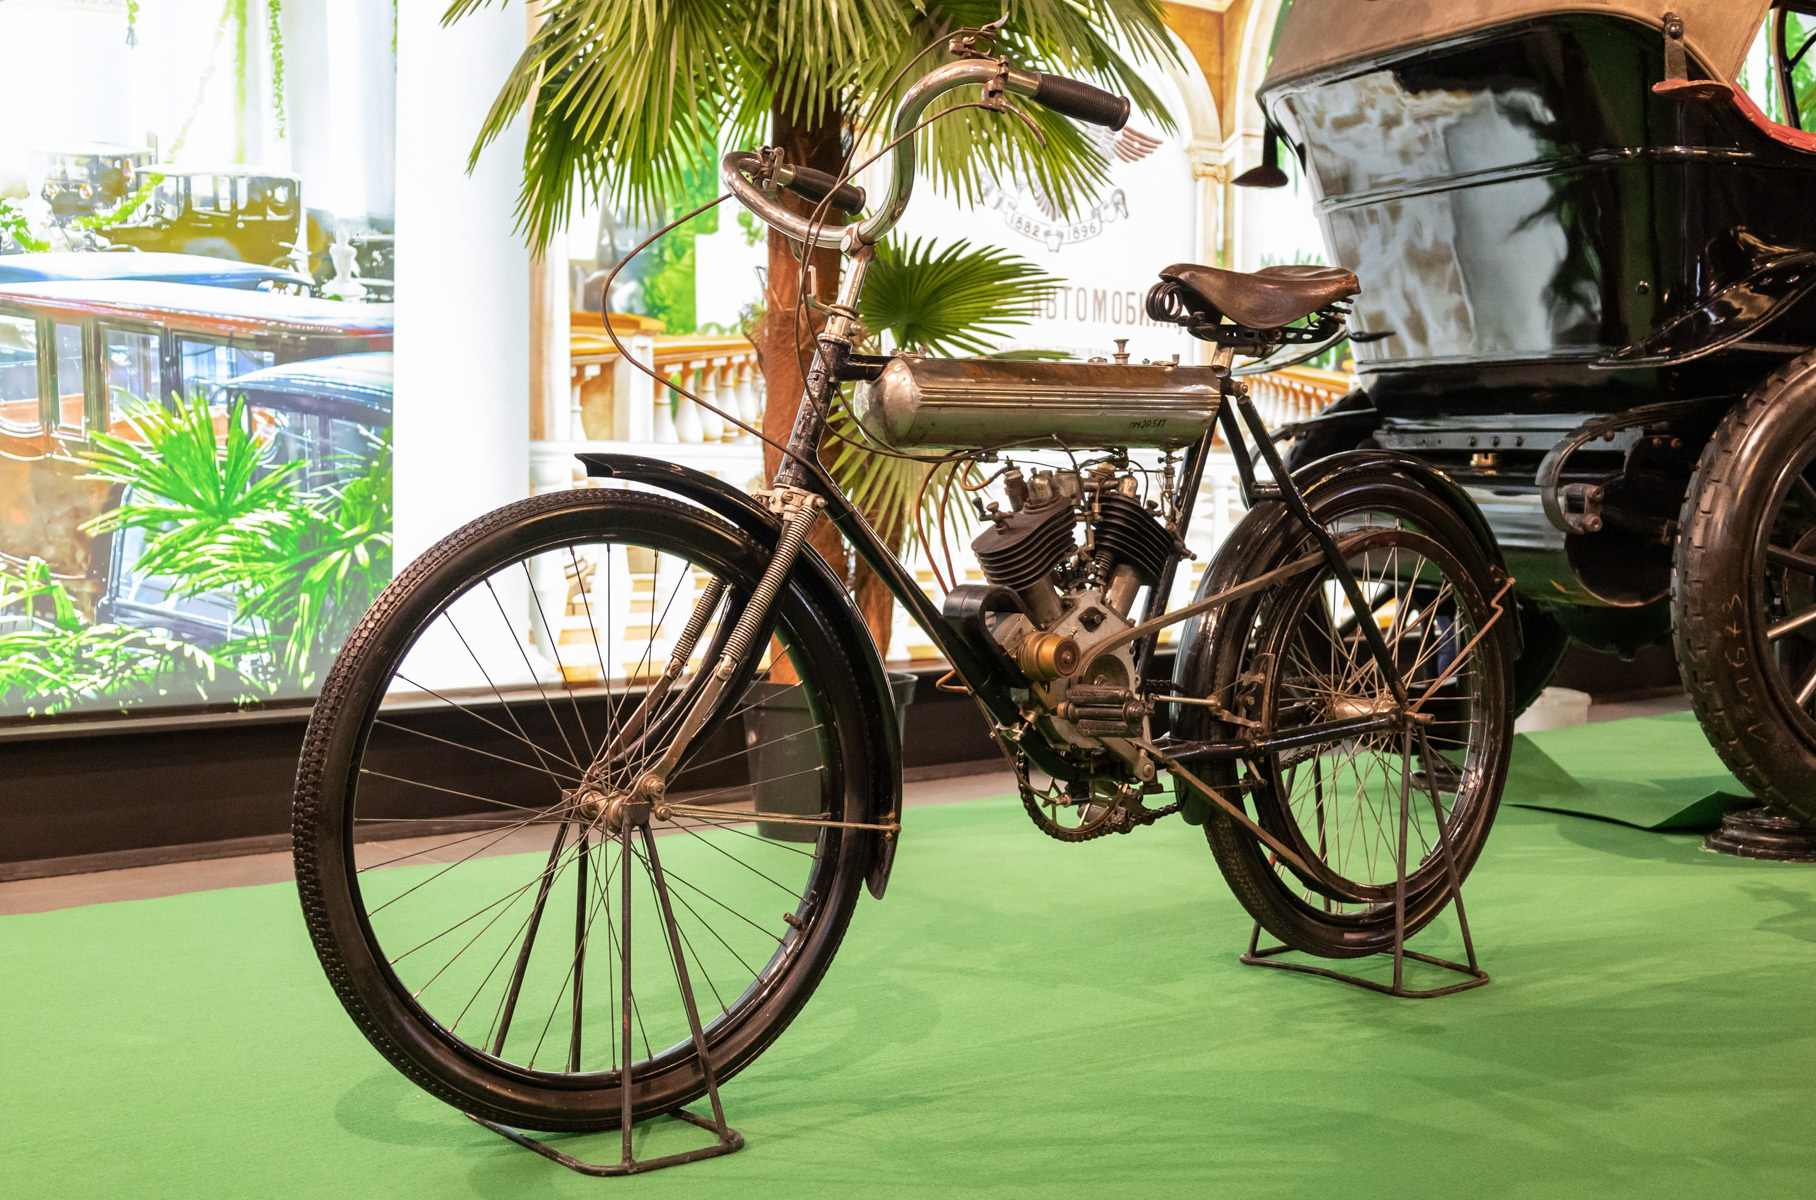 «Мото-Рев-Дукс» — единственный мотоцикл, выпускавшийся серийно в Российской империи. С 1909 по 1915 год свет увидело около 500 экземпляров этой модели. В конструкции использовался иностранный мотор Moto-Reve и отечественная экипажная часть. Этот мотоцикл — из коллекции Политехнического музея.